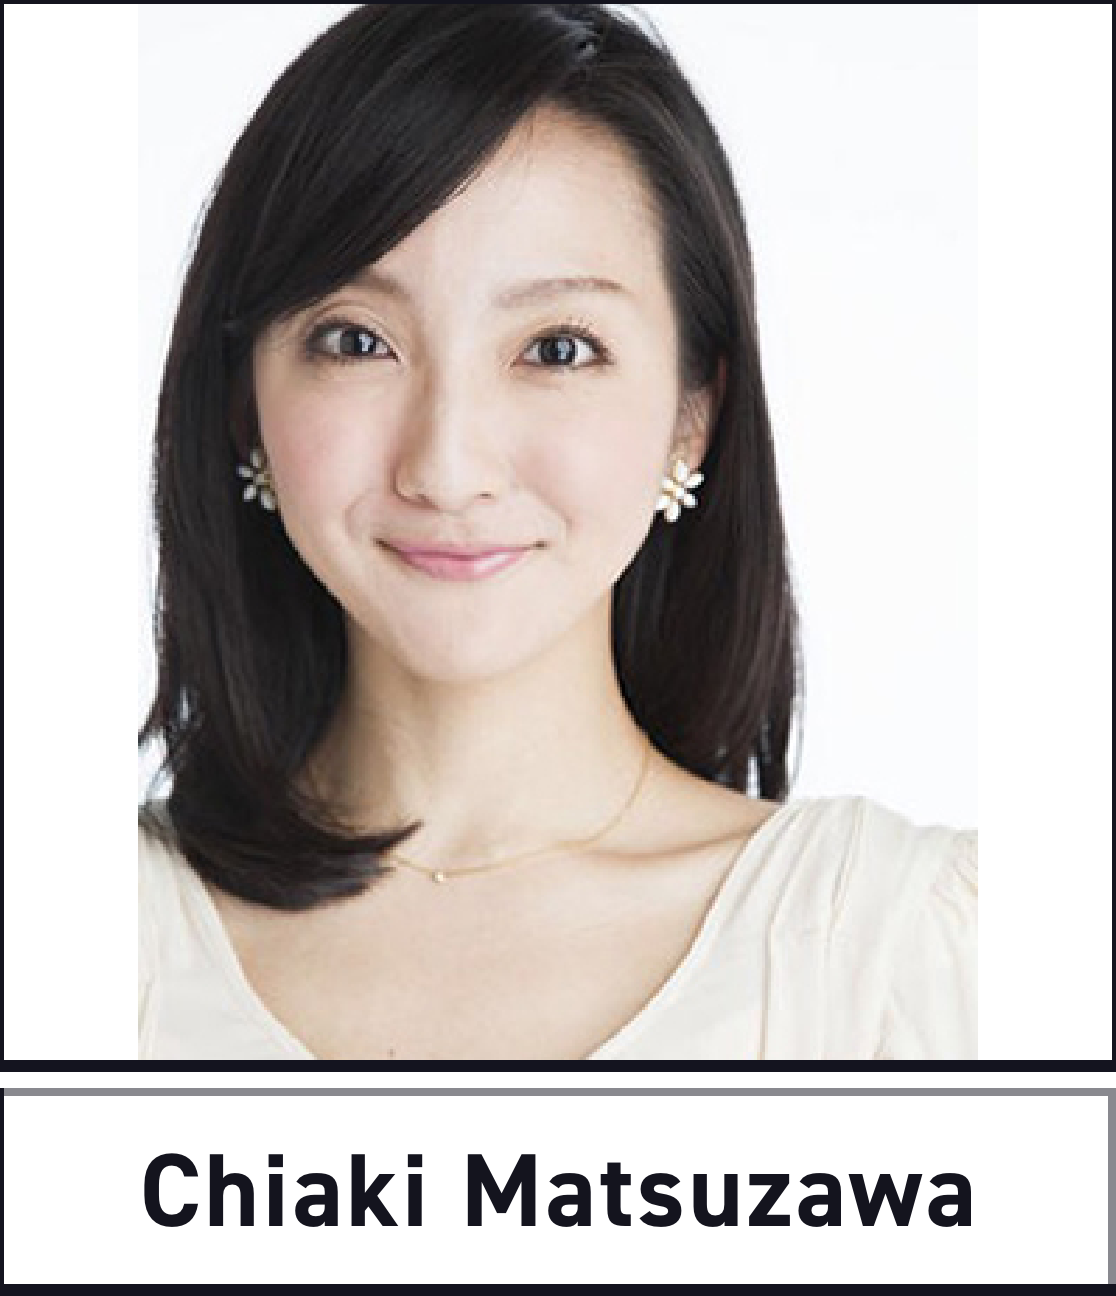 Chiaki Matsuzawa